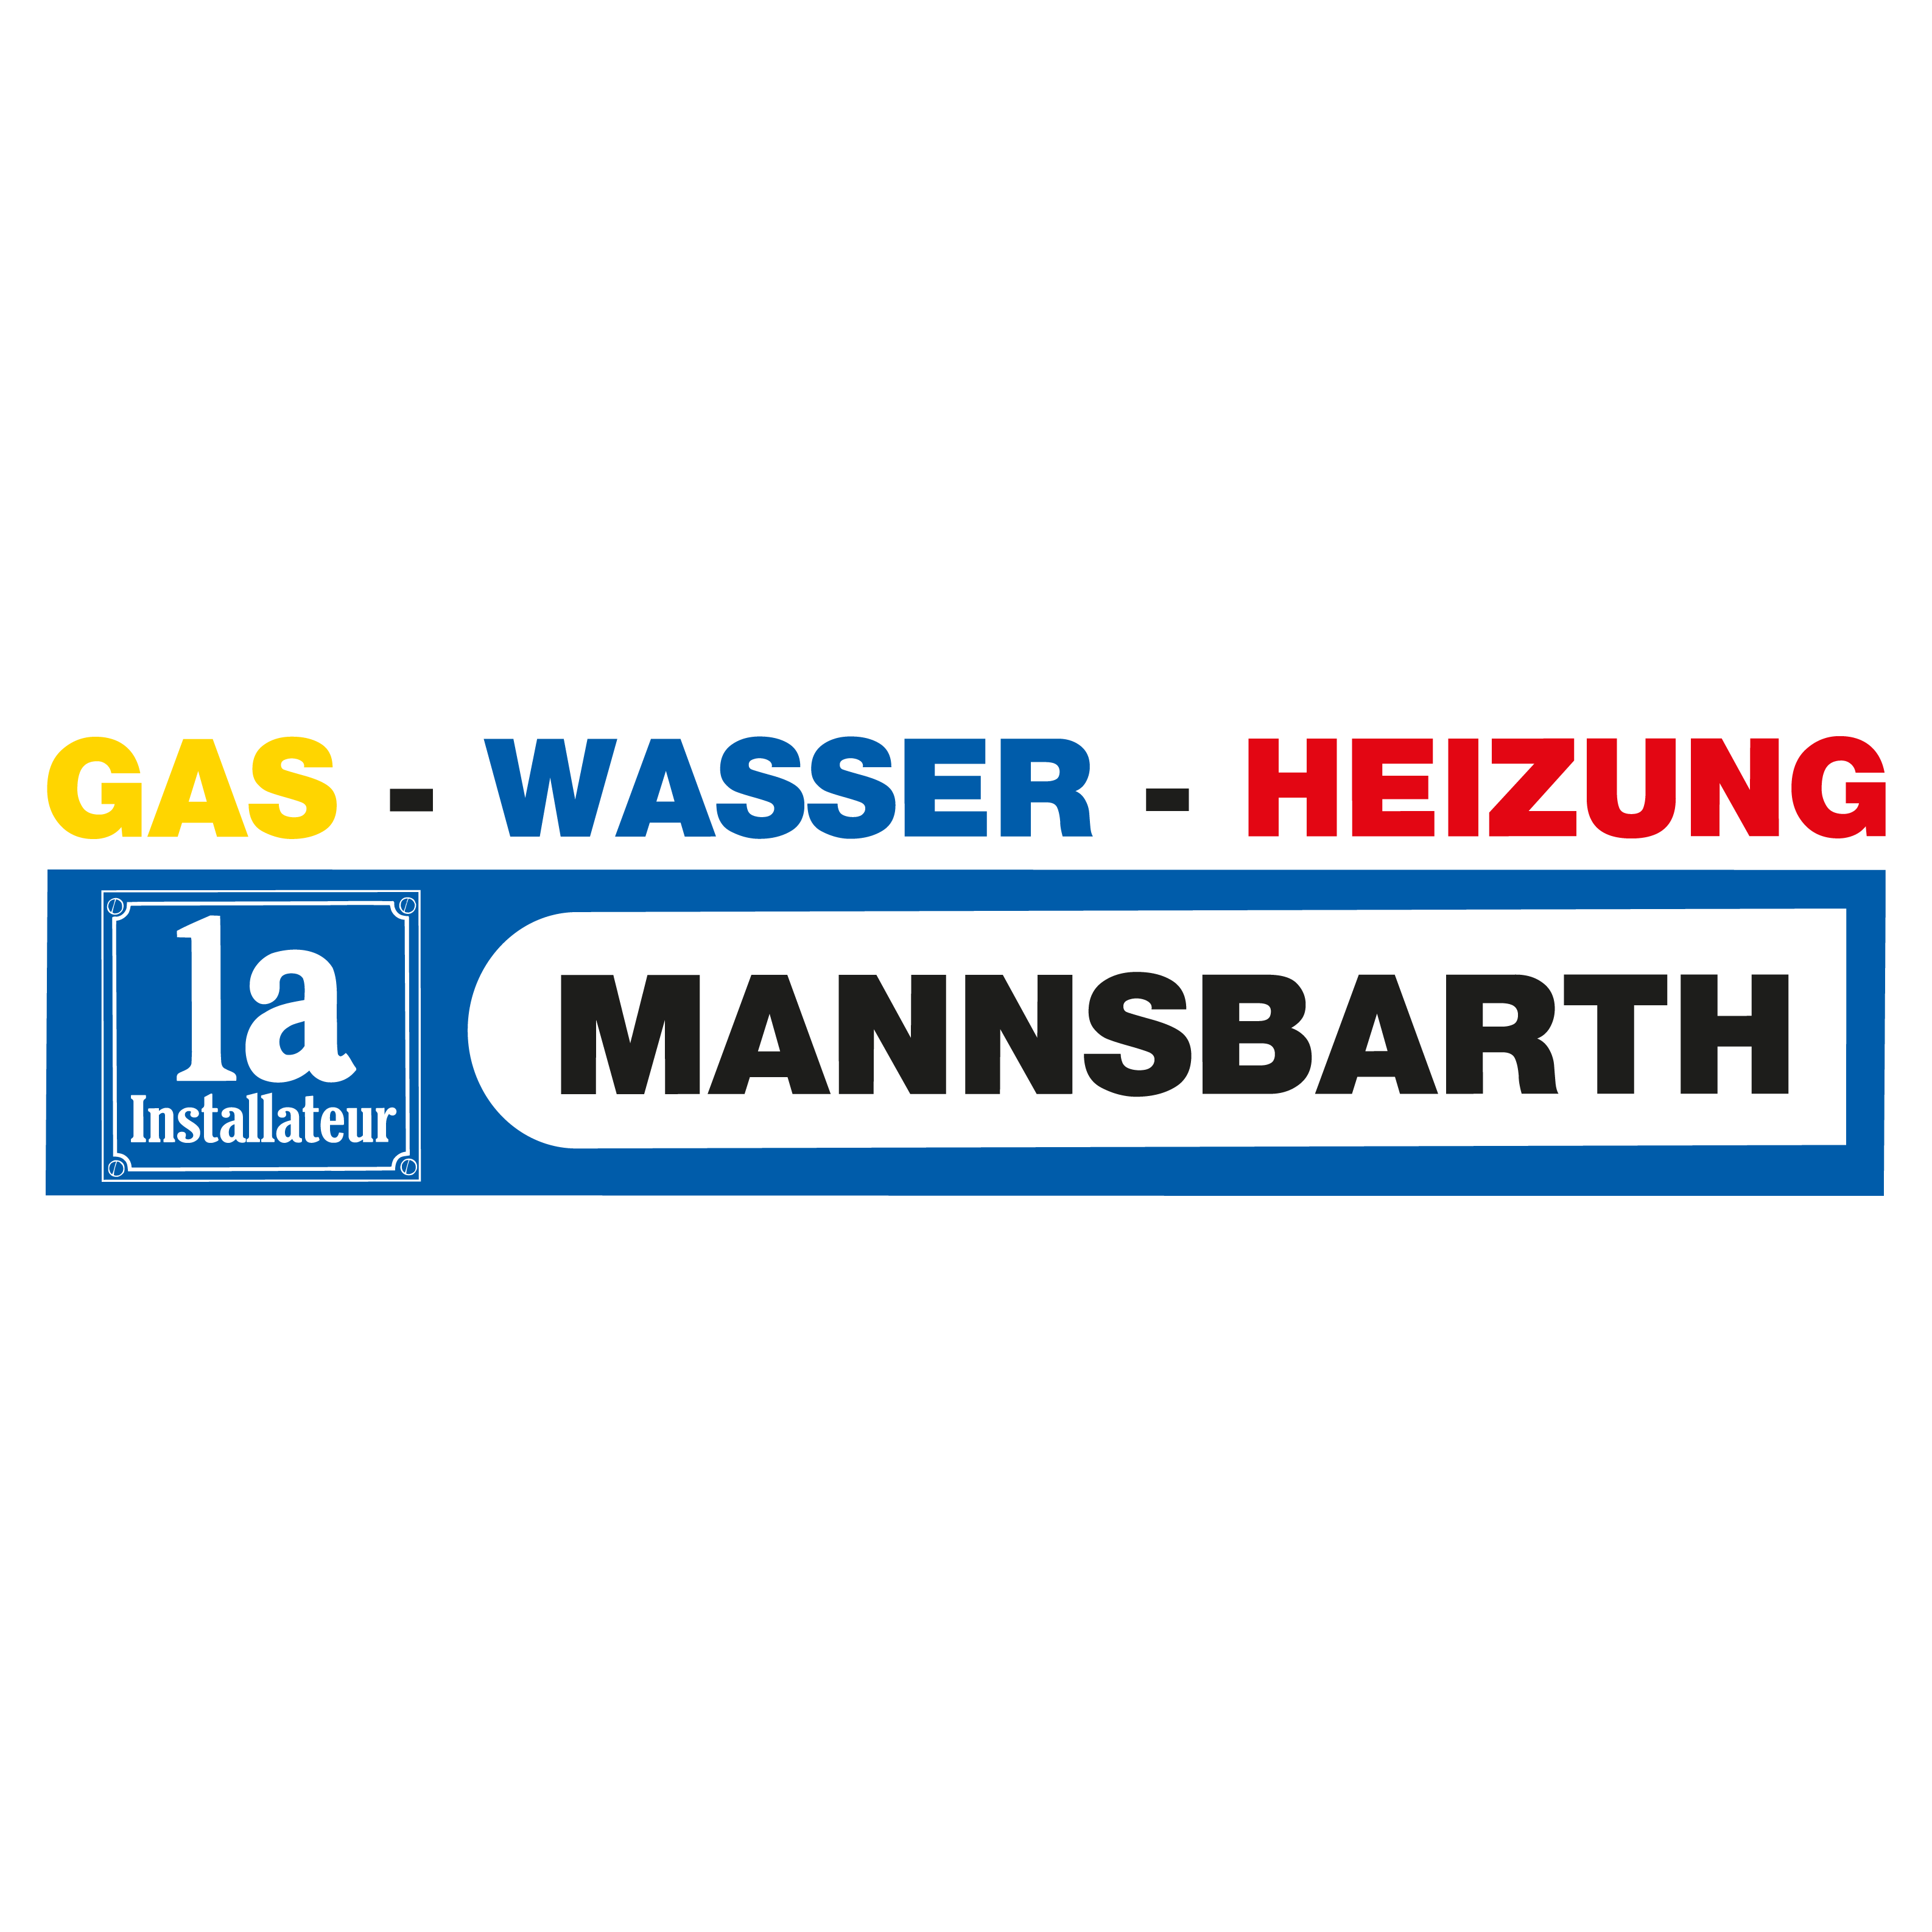 1a Installateur Mannsbarth 1a Installateur - Mannsbarth GmbH Wien 01 3019991